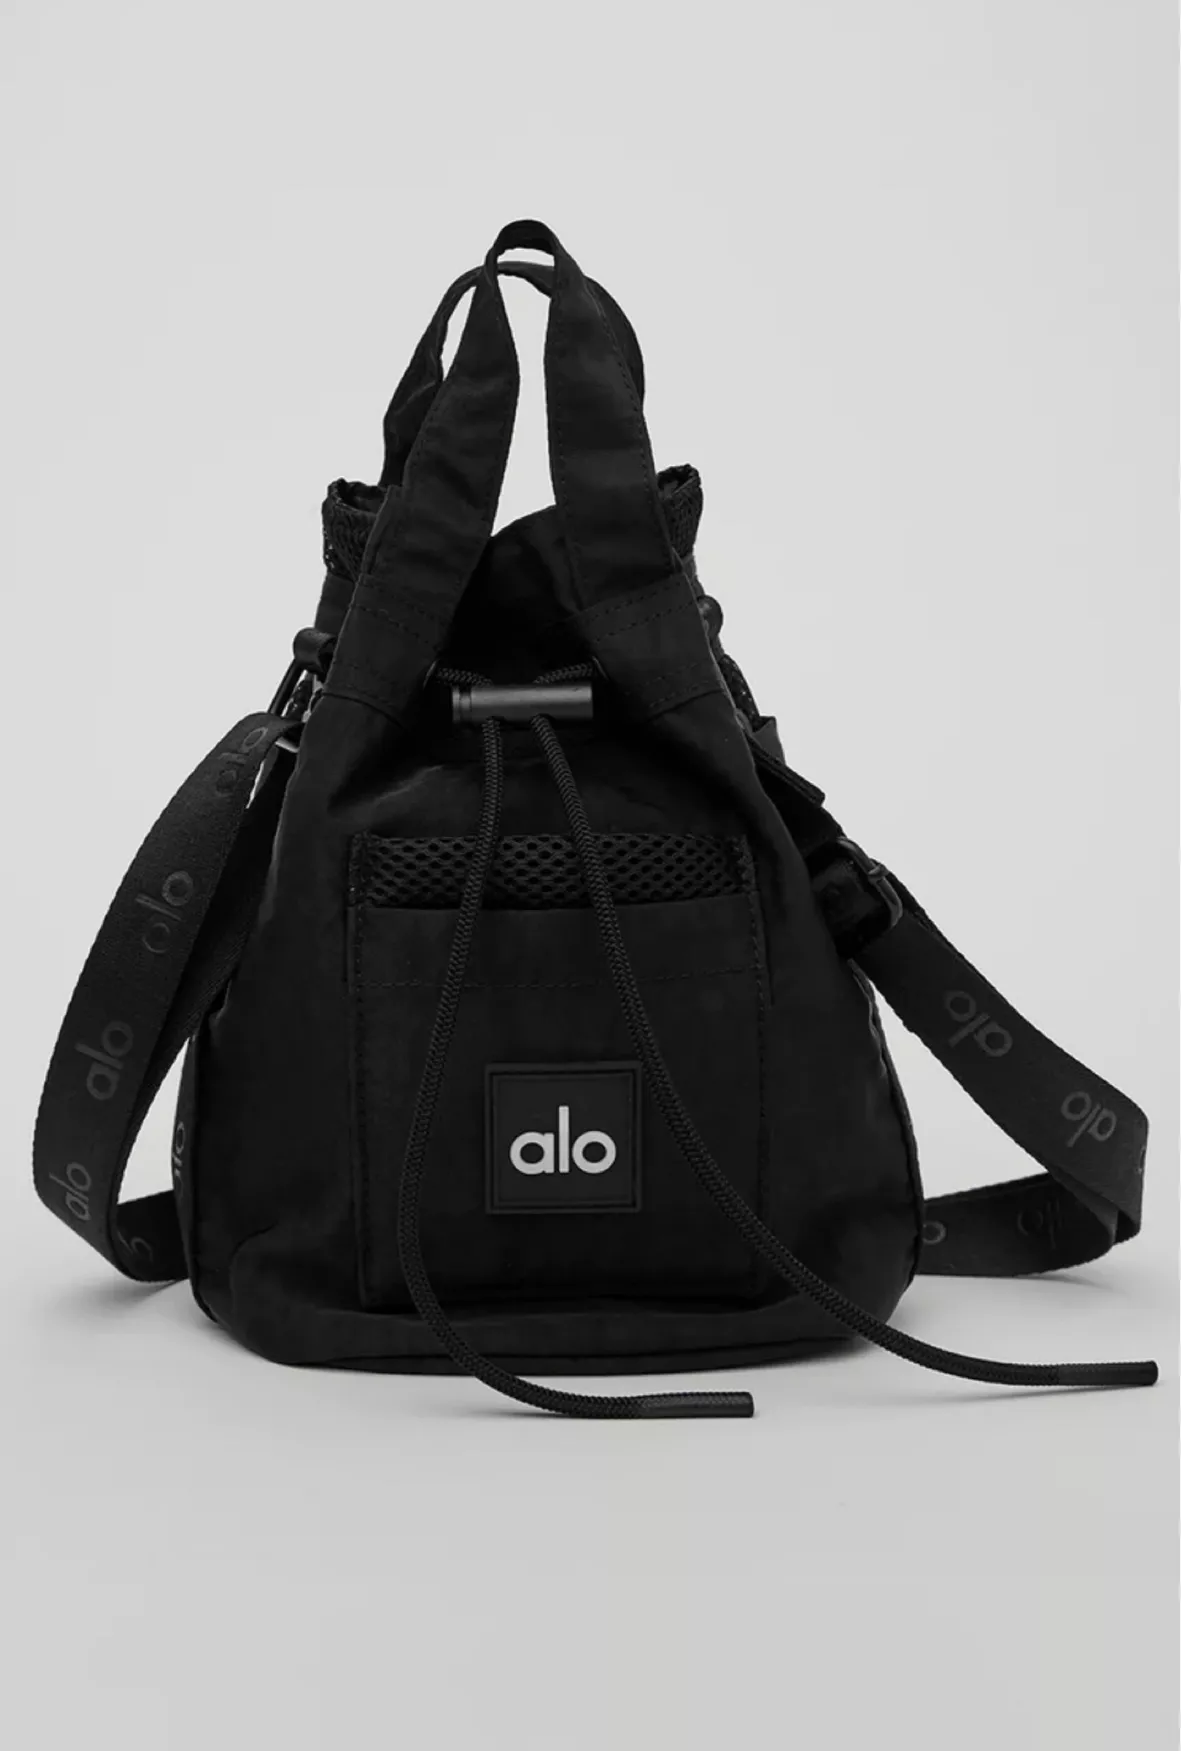 Stylish Alo Yoga Backpack